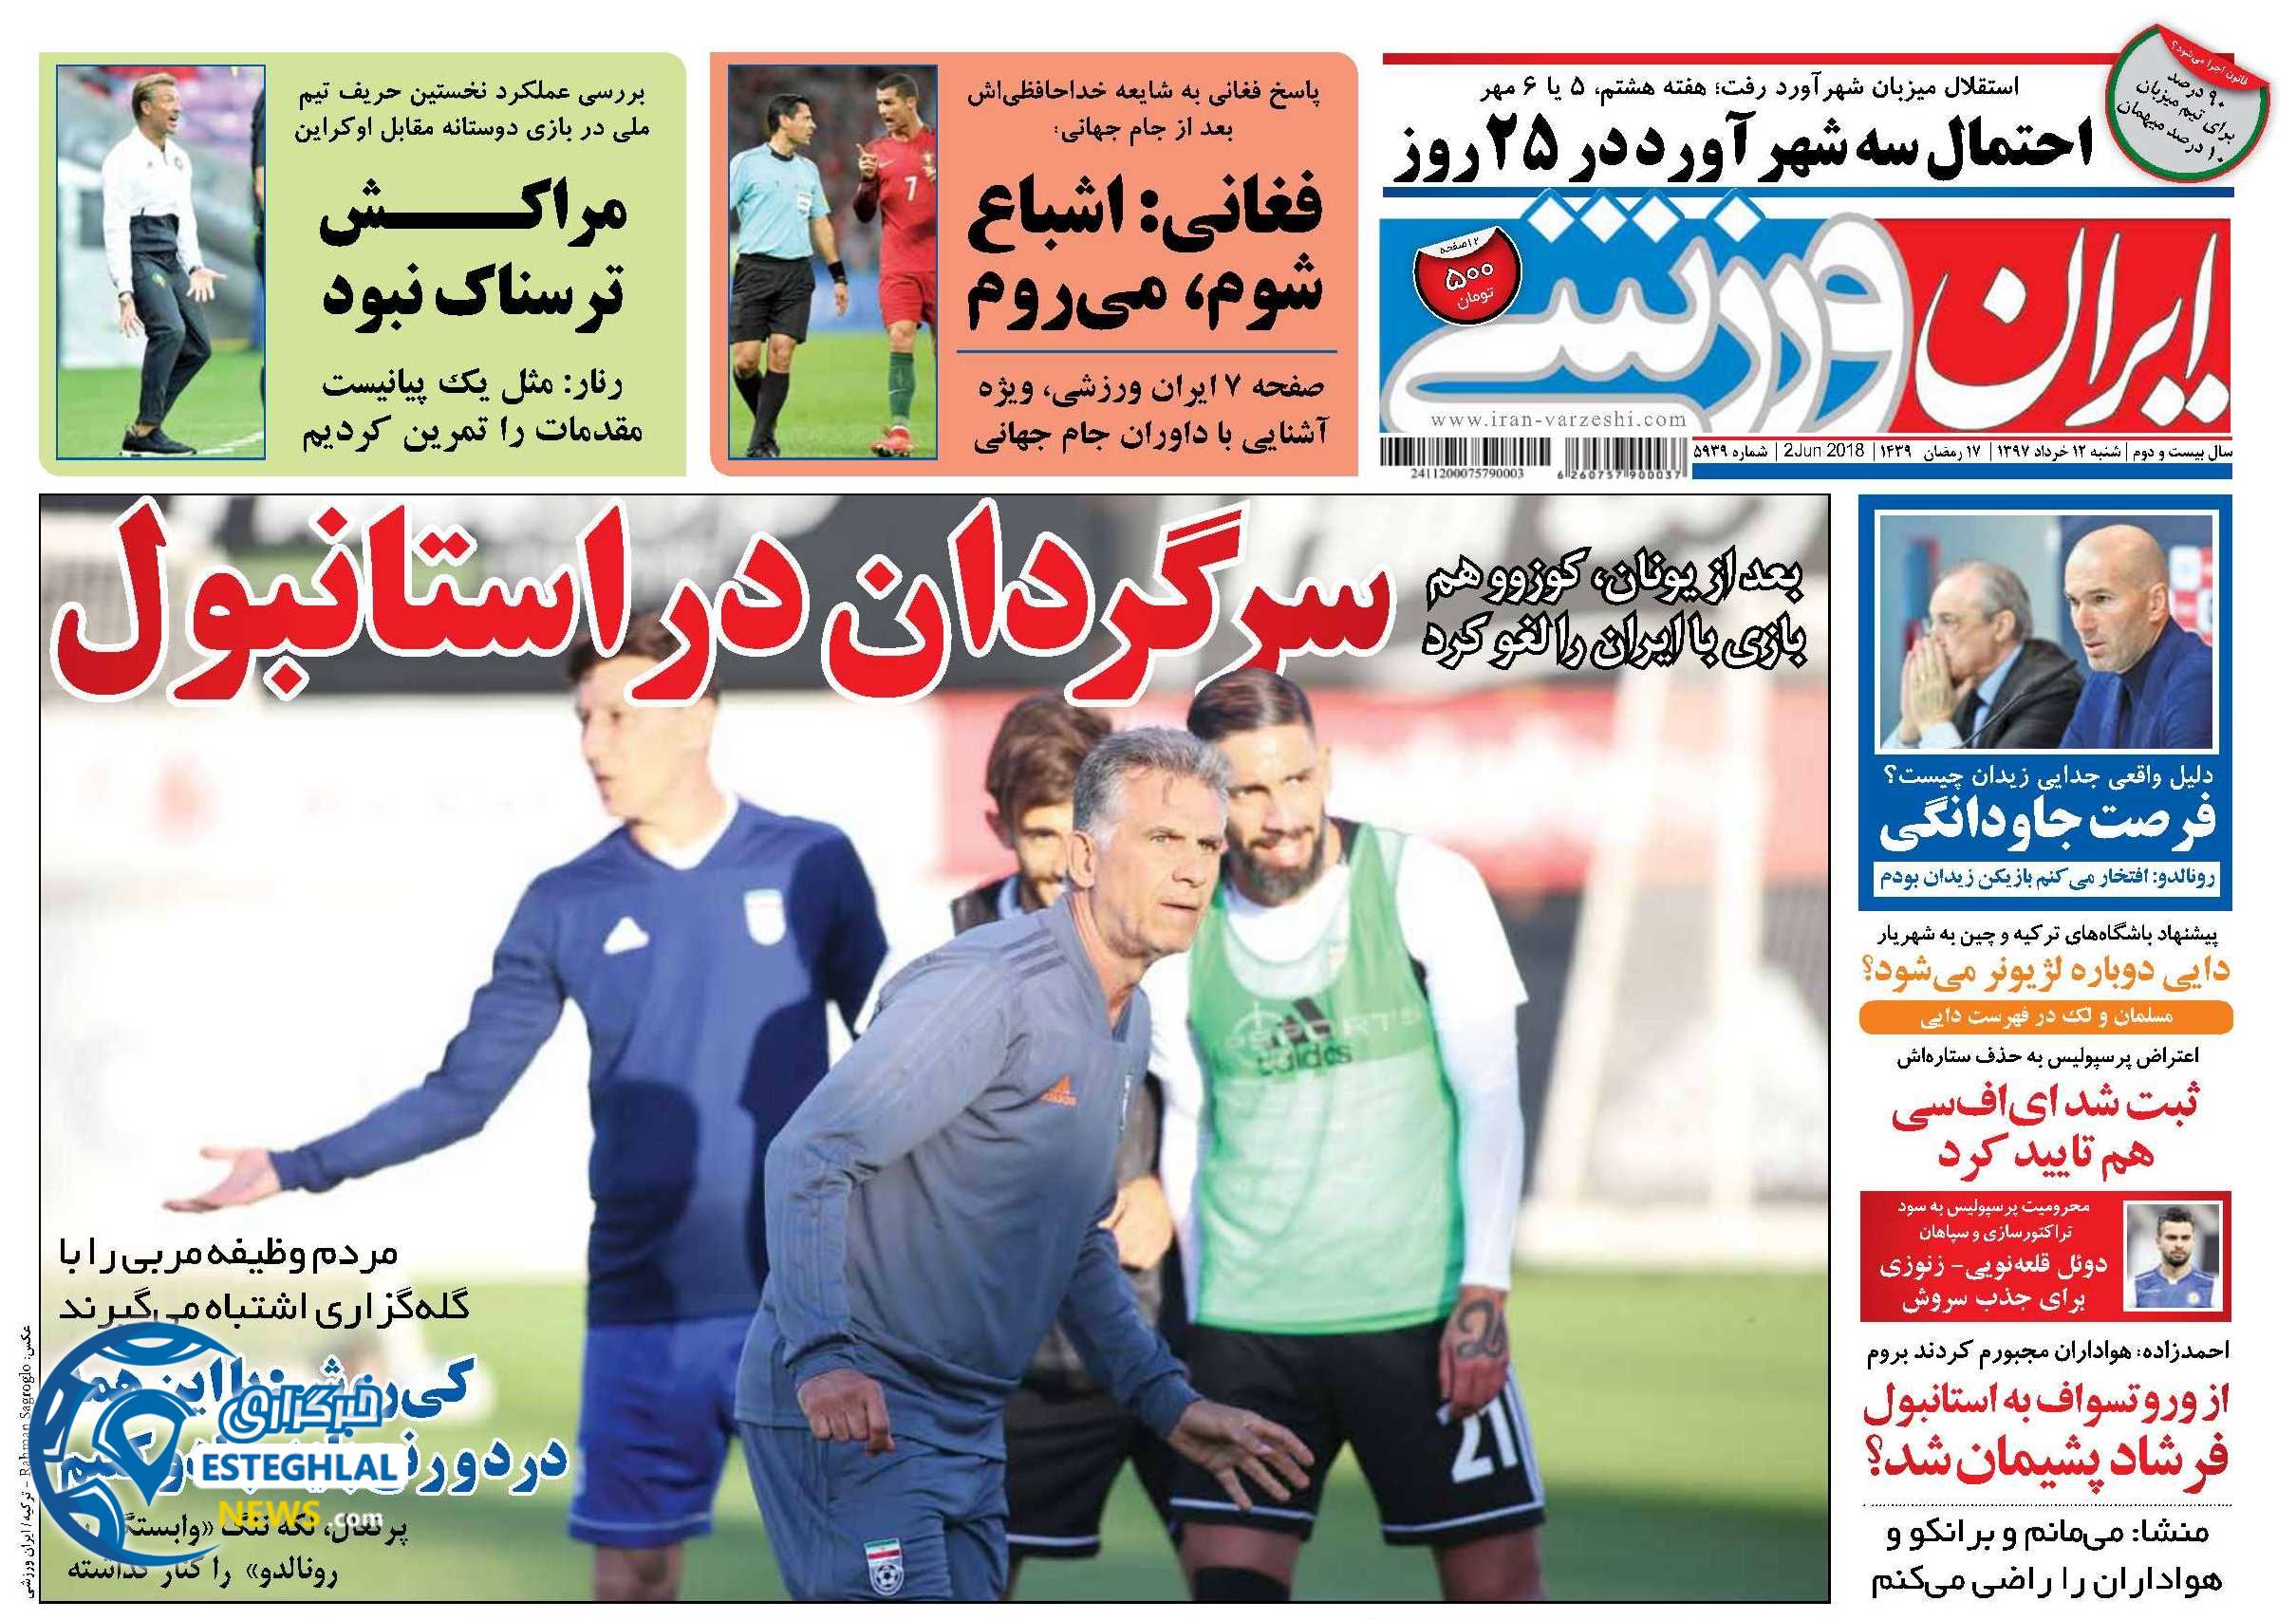   روزنامه ایران ورزشی شنبه 12 خرداد 1397  